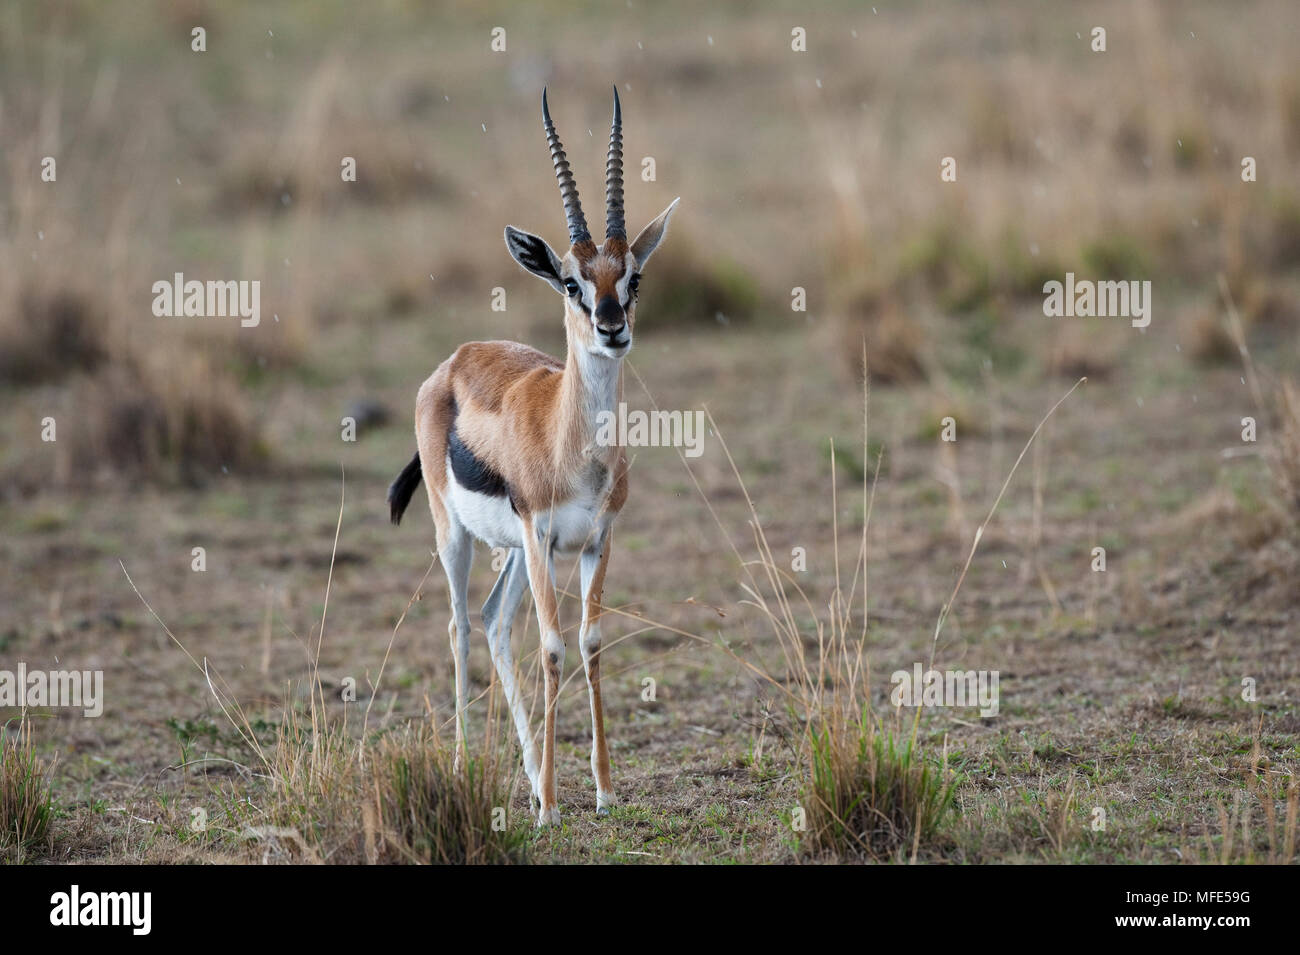 Männliche Thompson's Gazelle bei leichtem Regen; Gazella thomsonii, Masai Mara, Kenia. Stockfoto